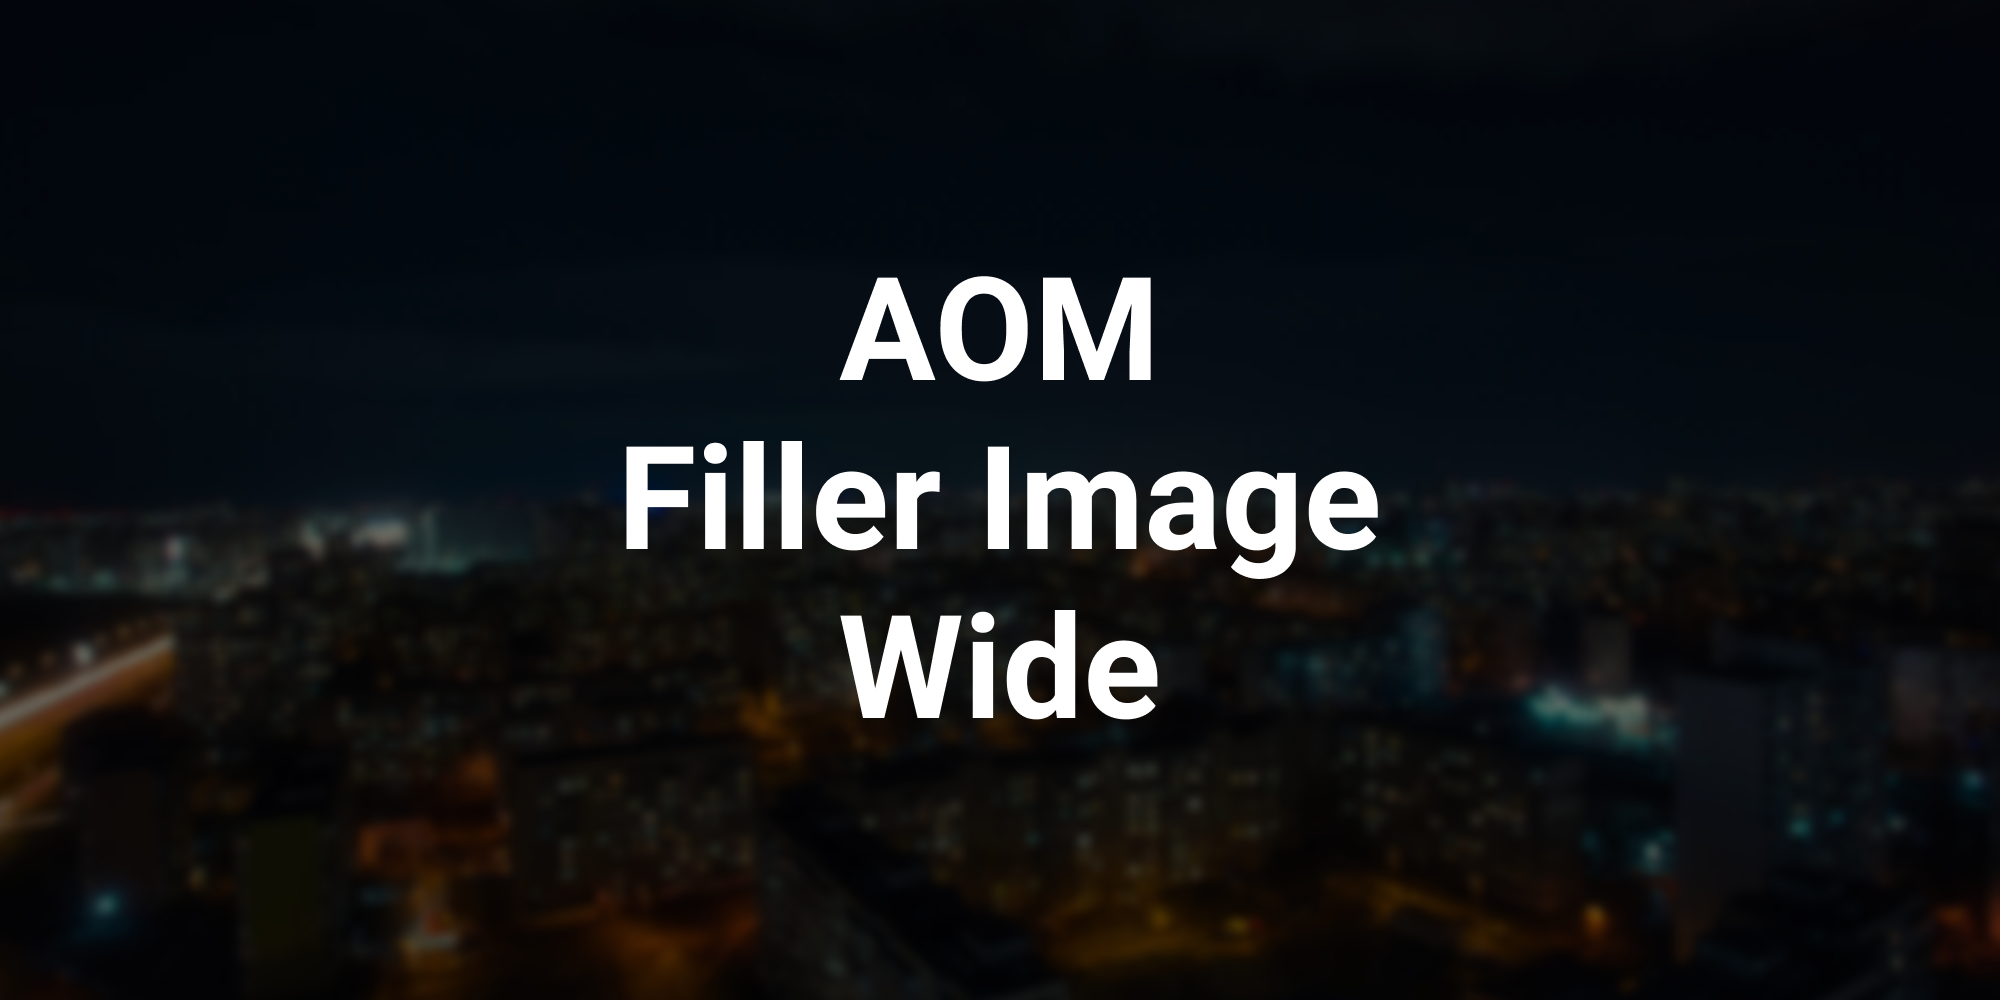 AOM Filler Image Wide